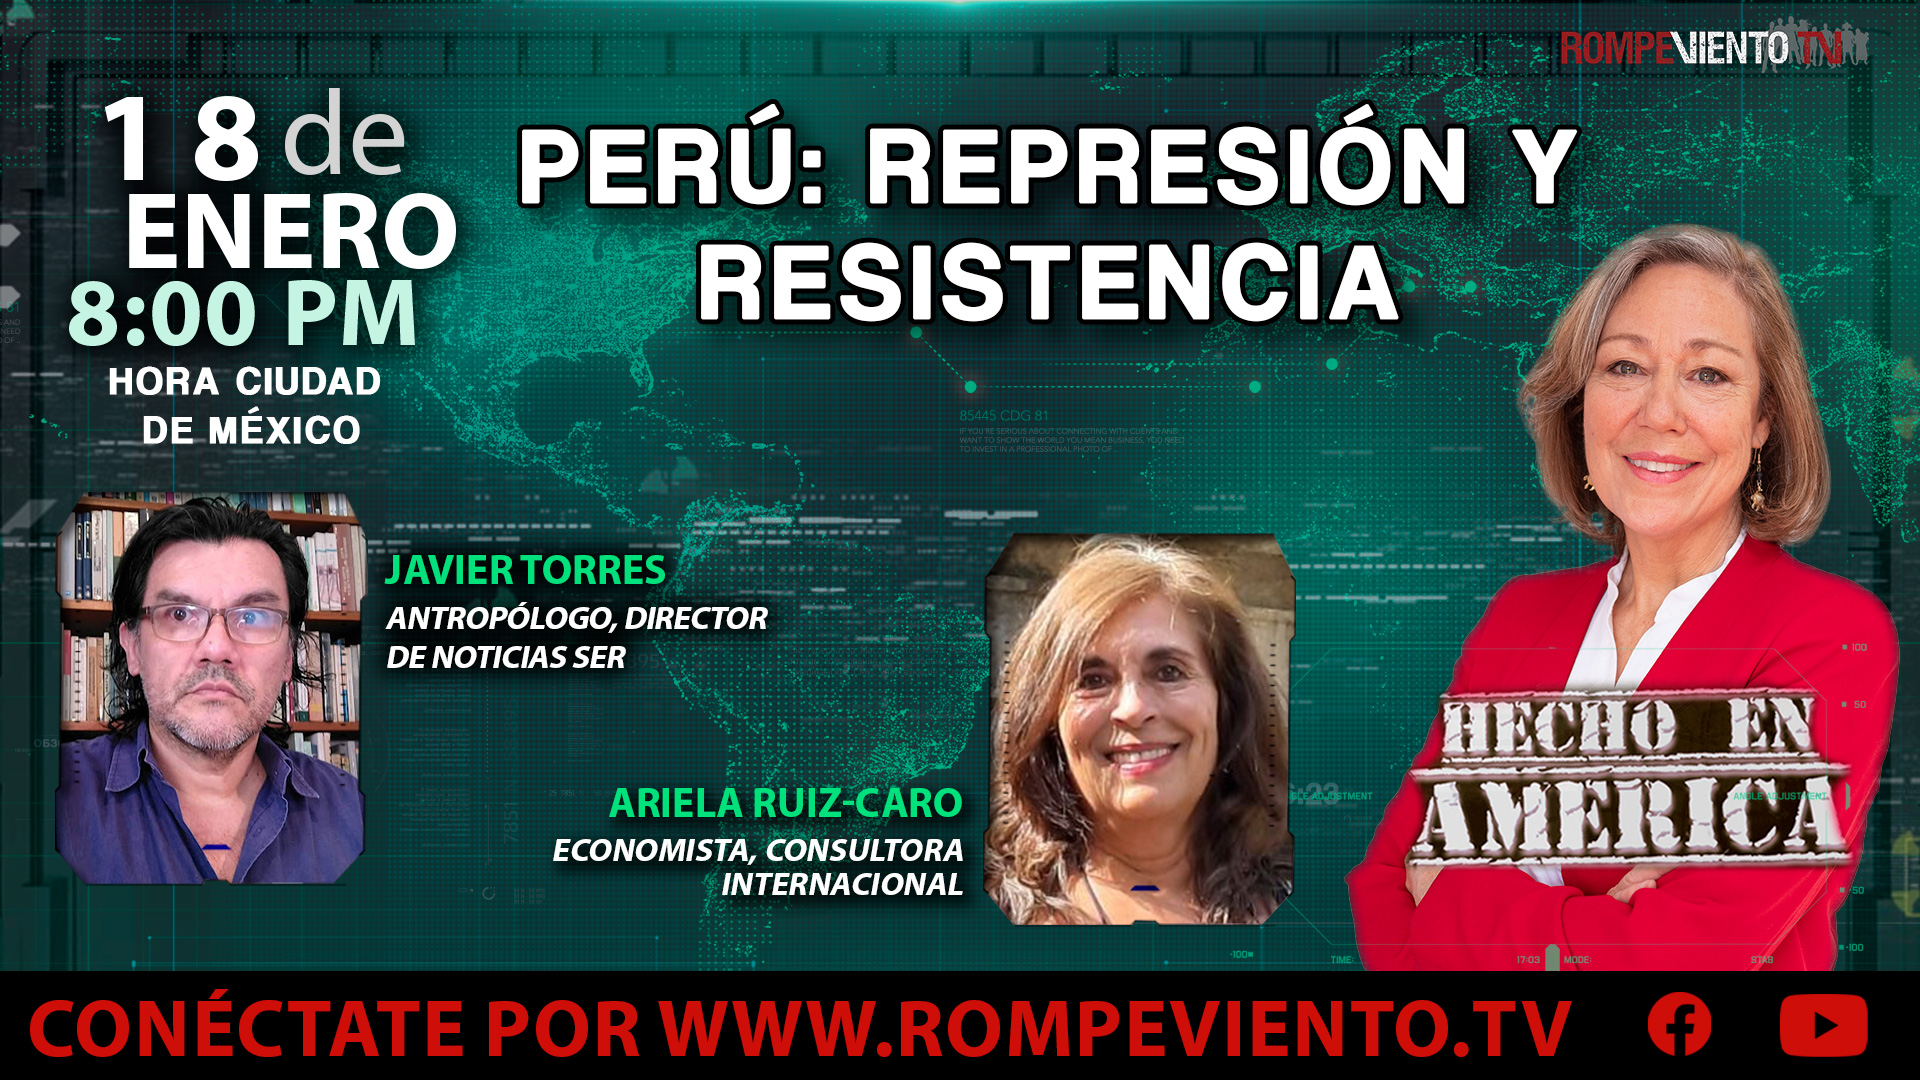 Perú: Represión y resistencia - Hecho en América